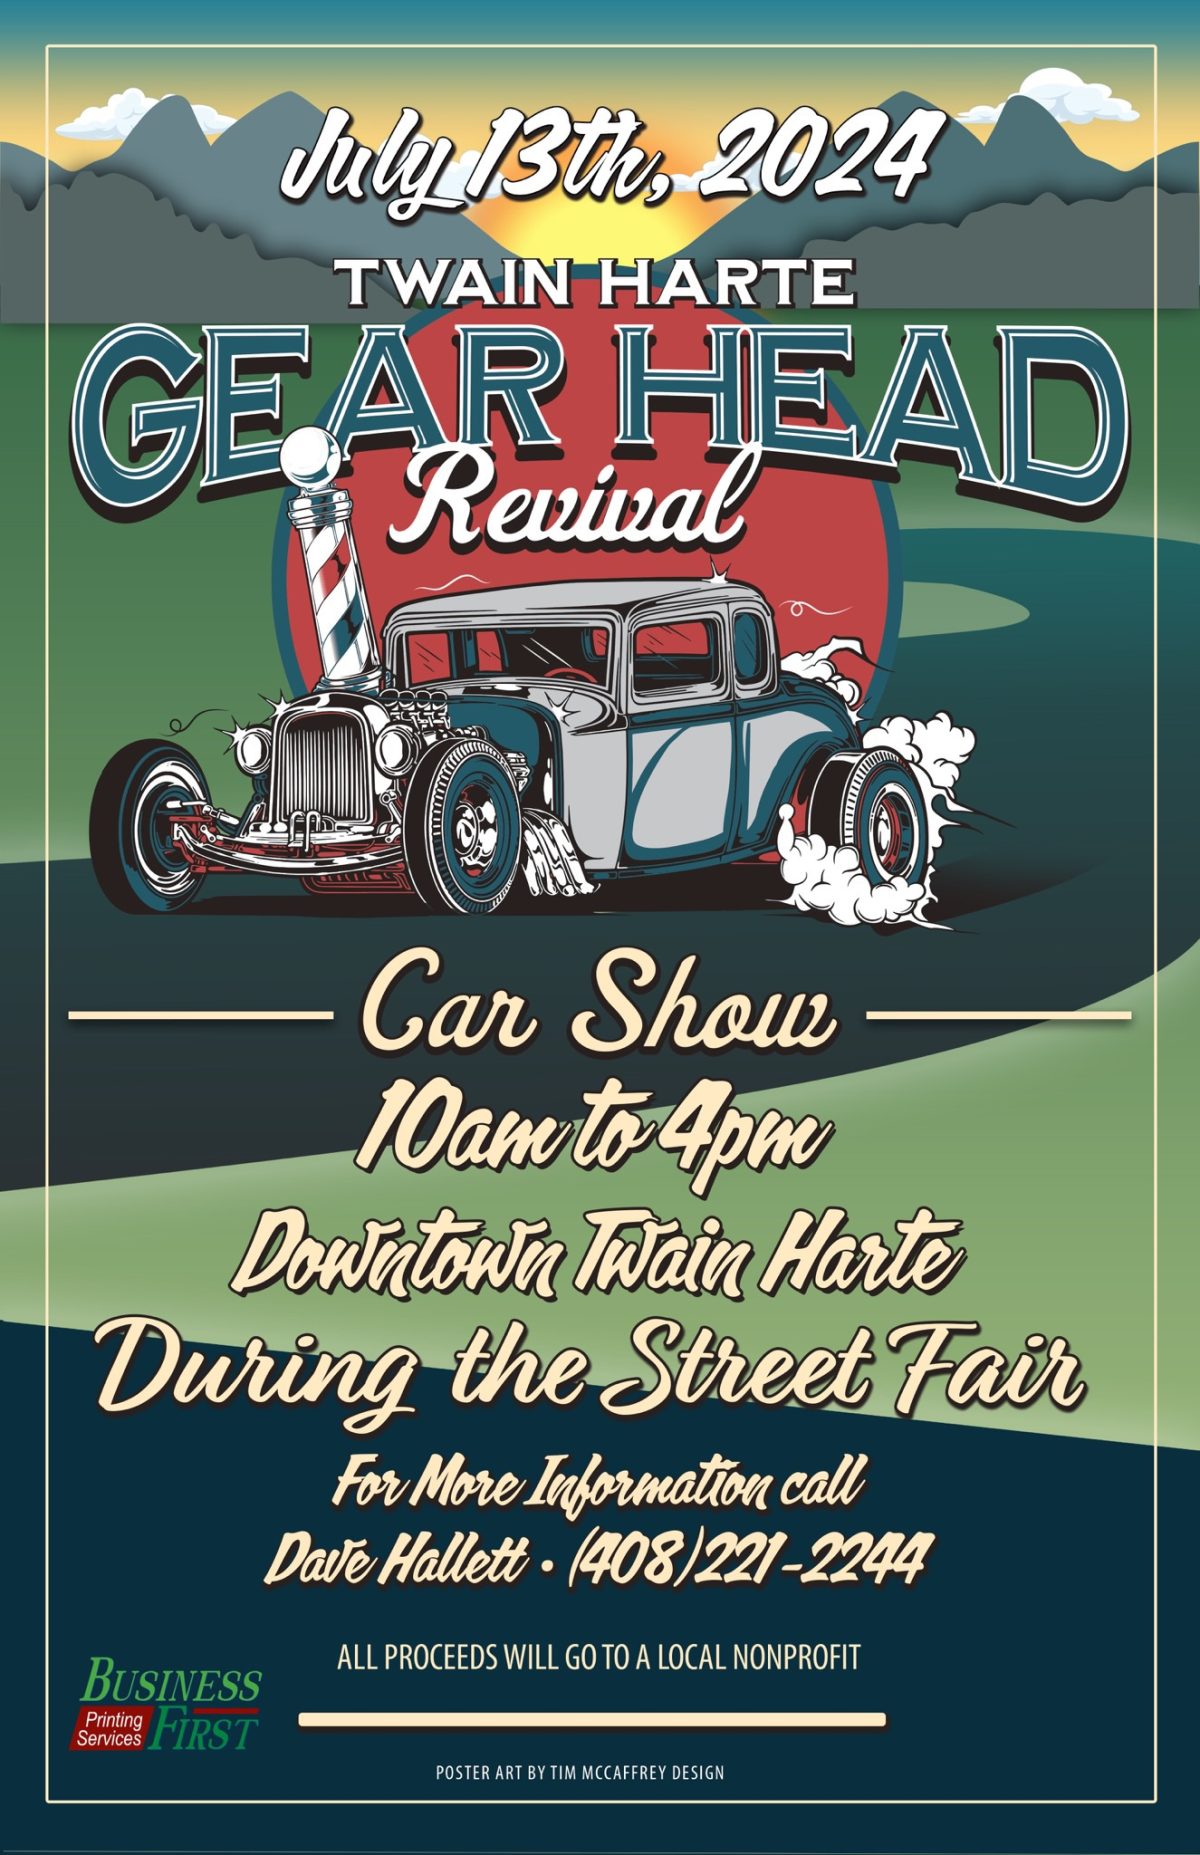 Gear Head Revival Car Show